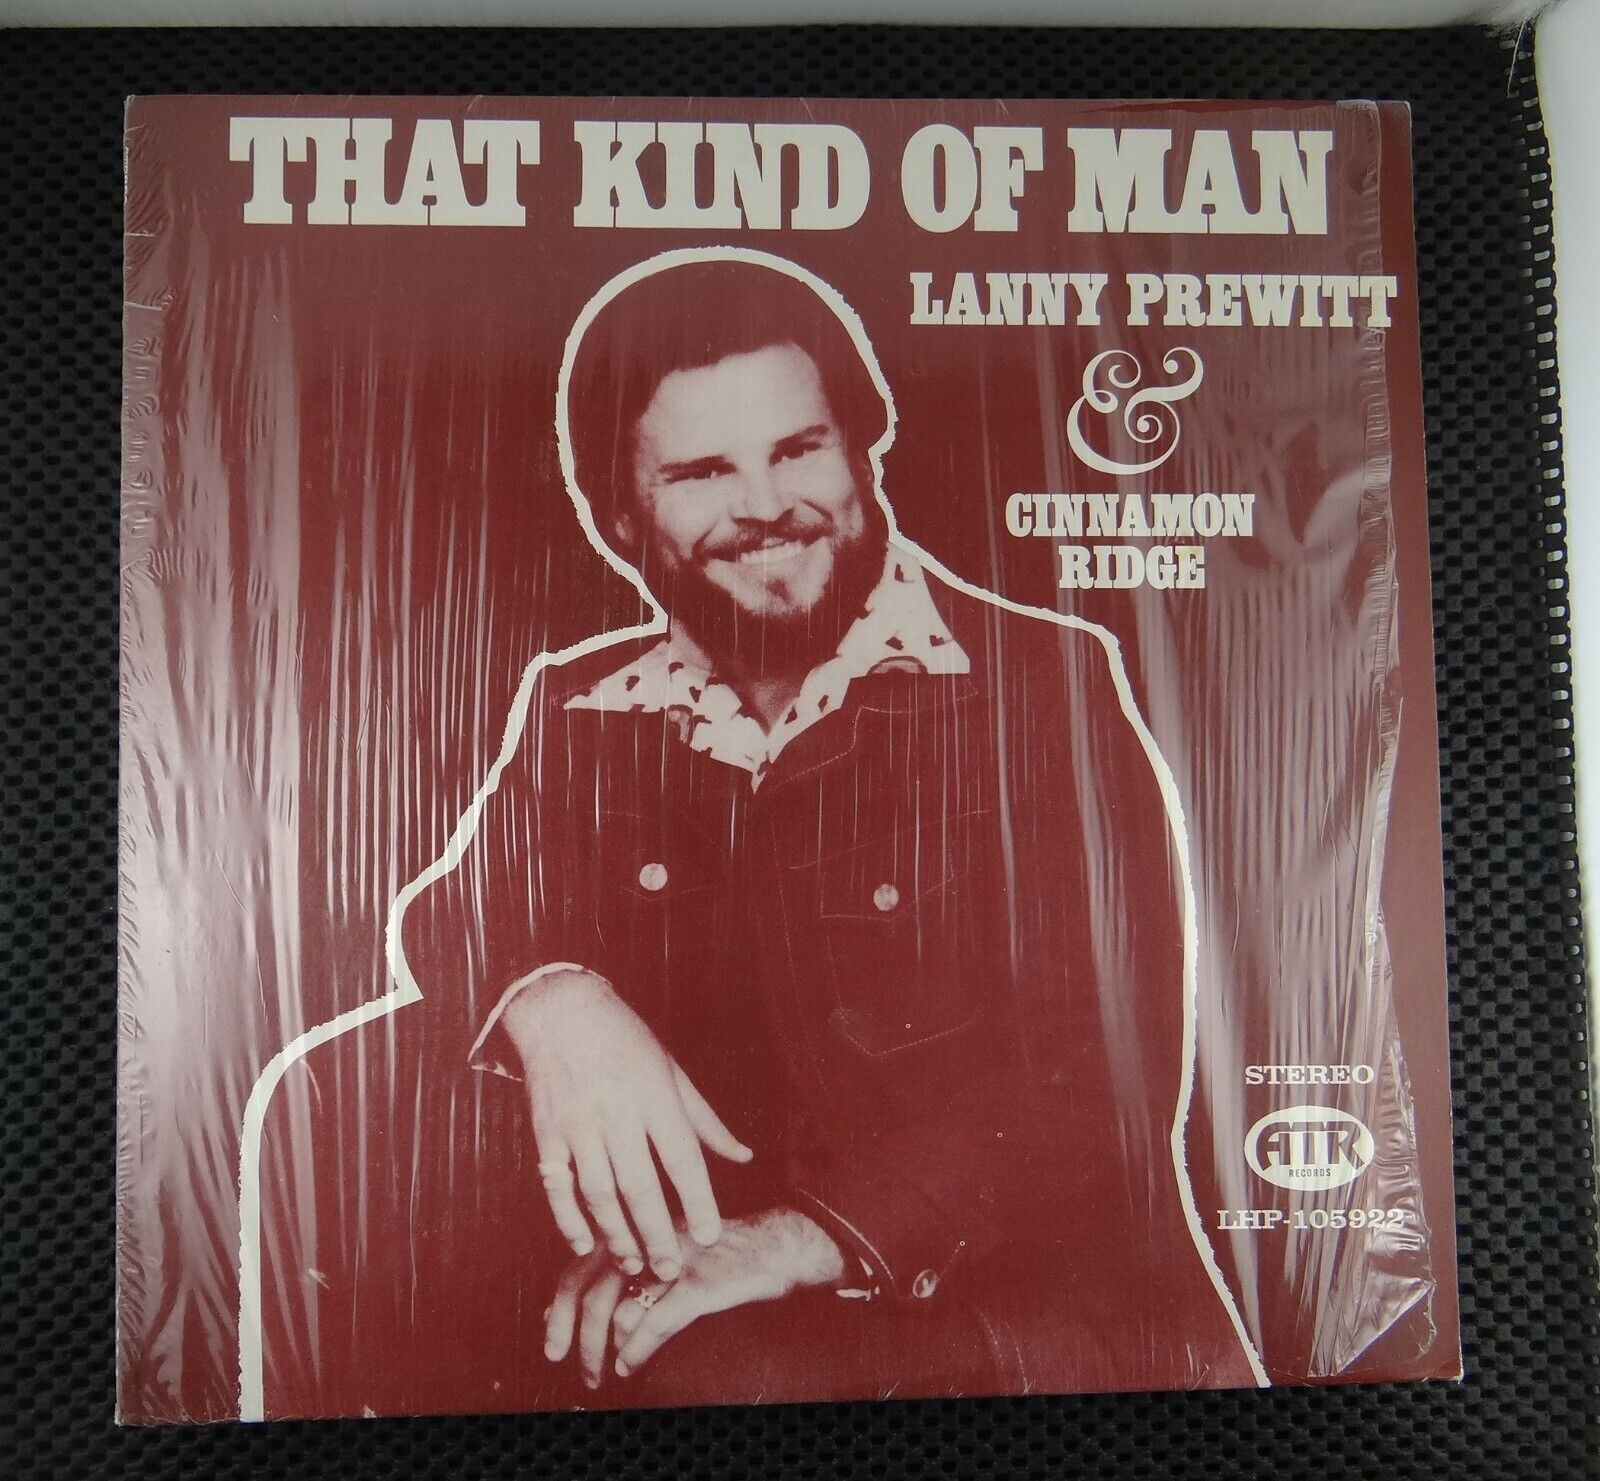 Lanny Prewitt & Cinnamon Ridge ‎– That Kind Of Man (ATR LHP-105922) signed